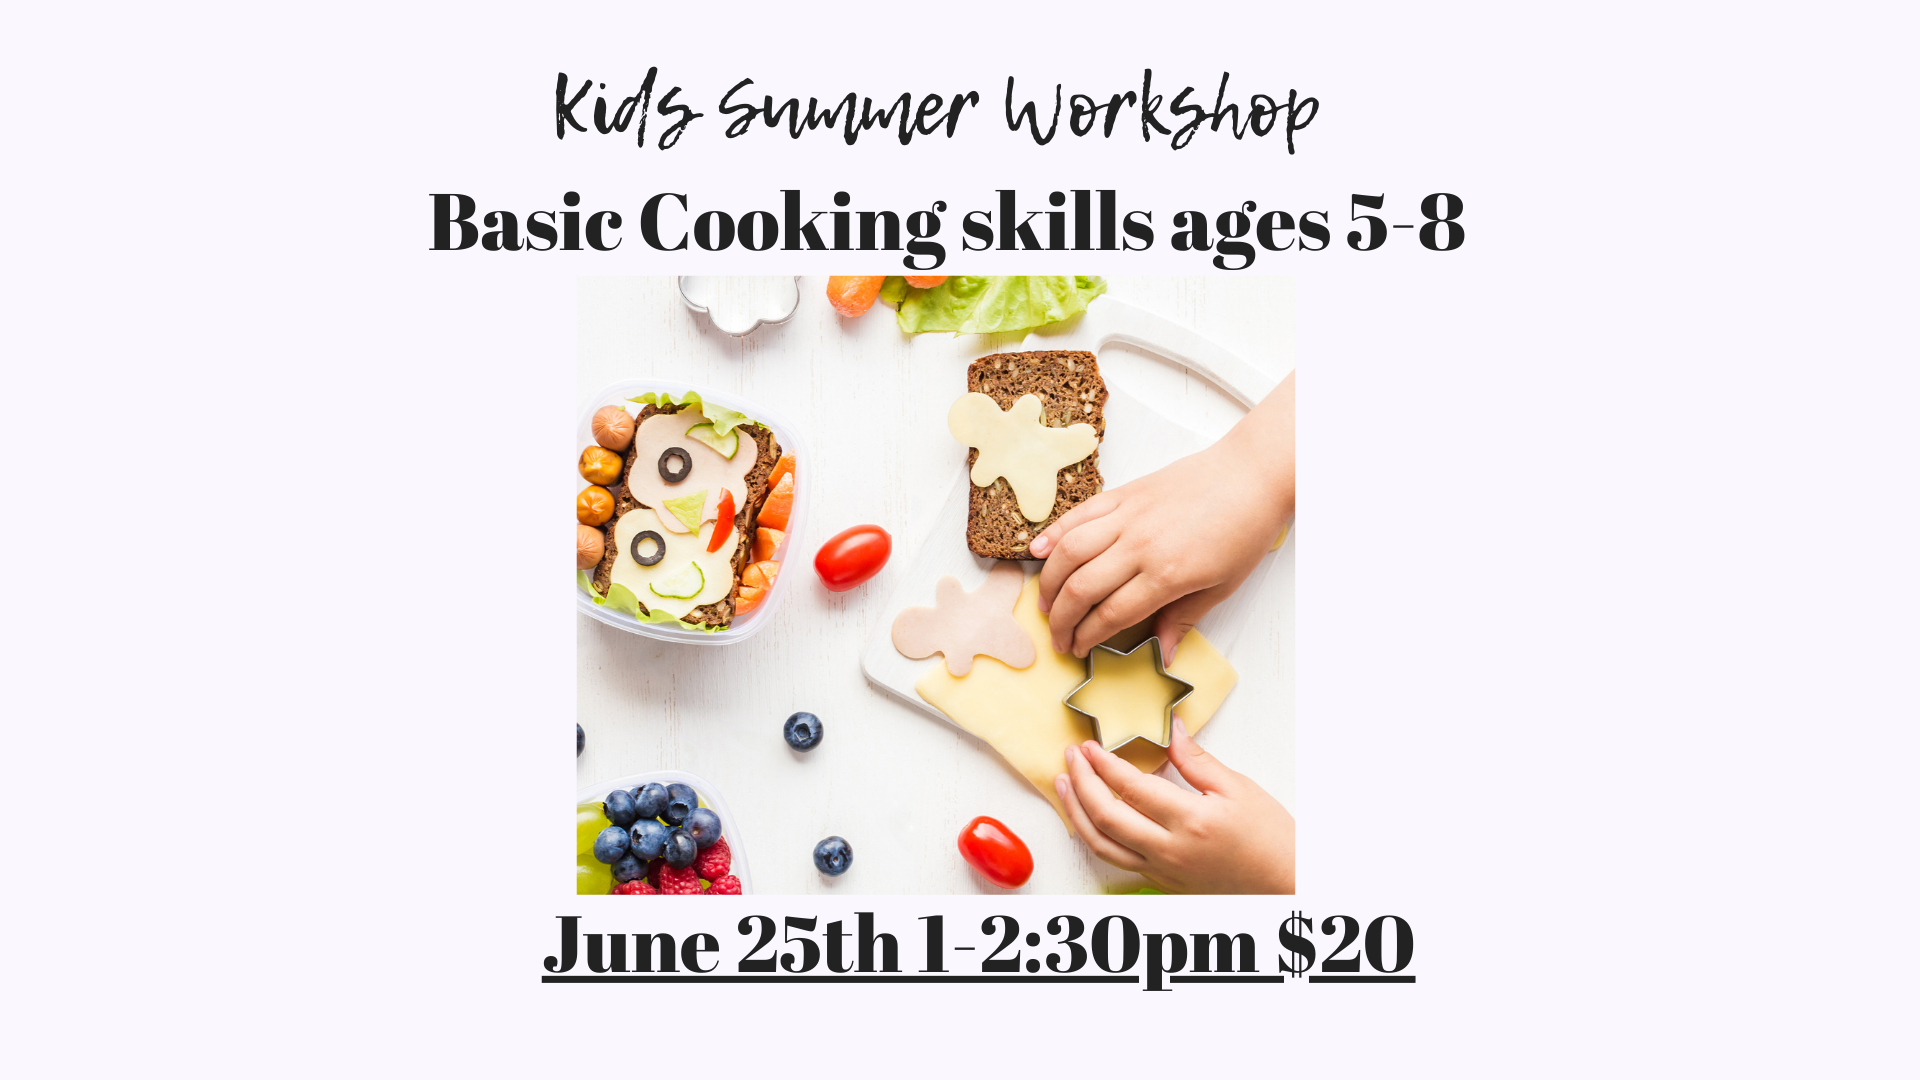 Kids Summer Workshop ages 5-8 July 28, 2024 1-2:30 $20